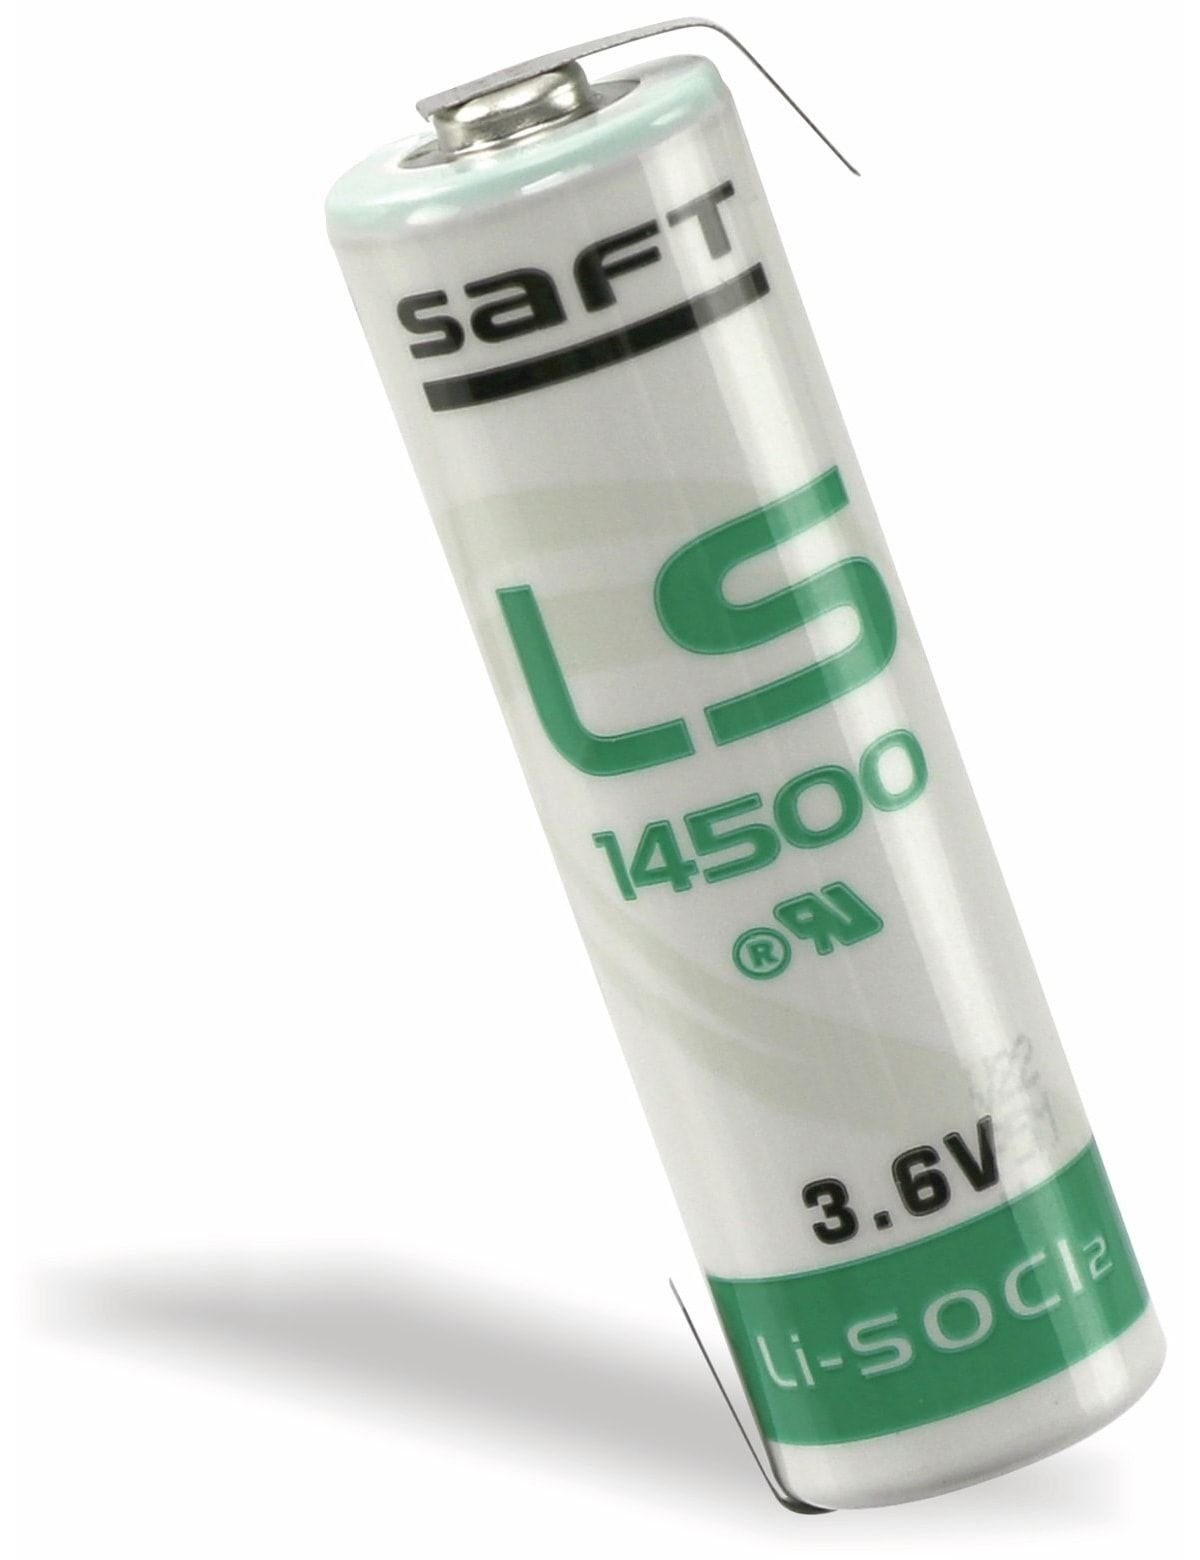 SAFT Lithium-Batterie 14500-CNR Batterie AA, LS mit Saft